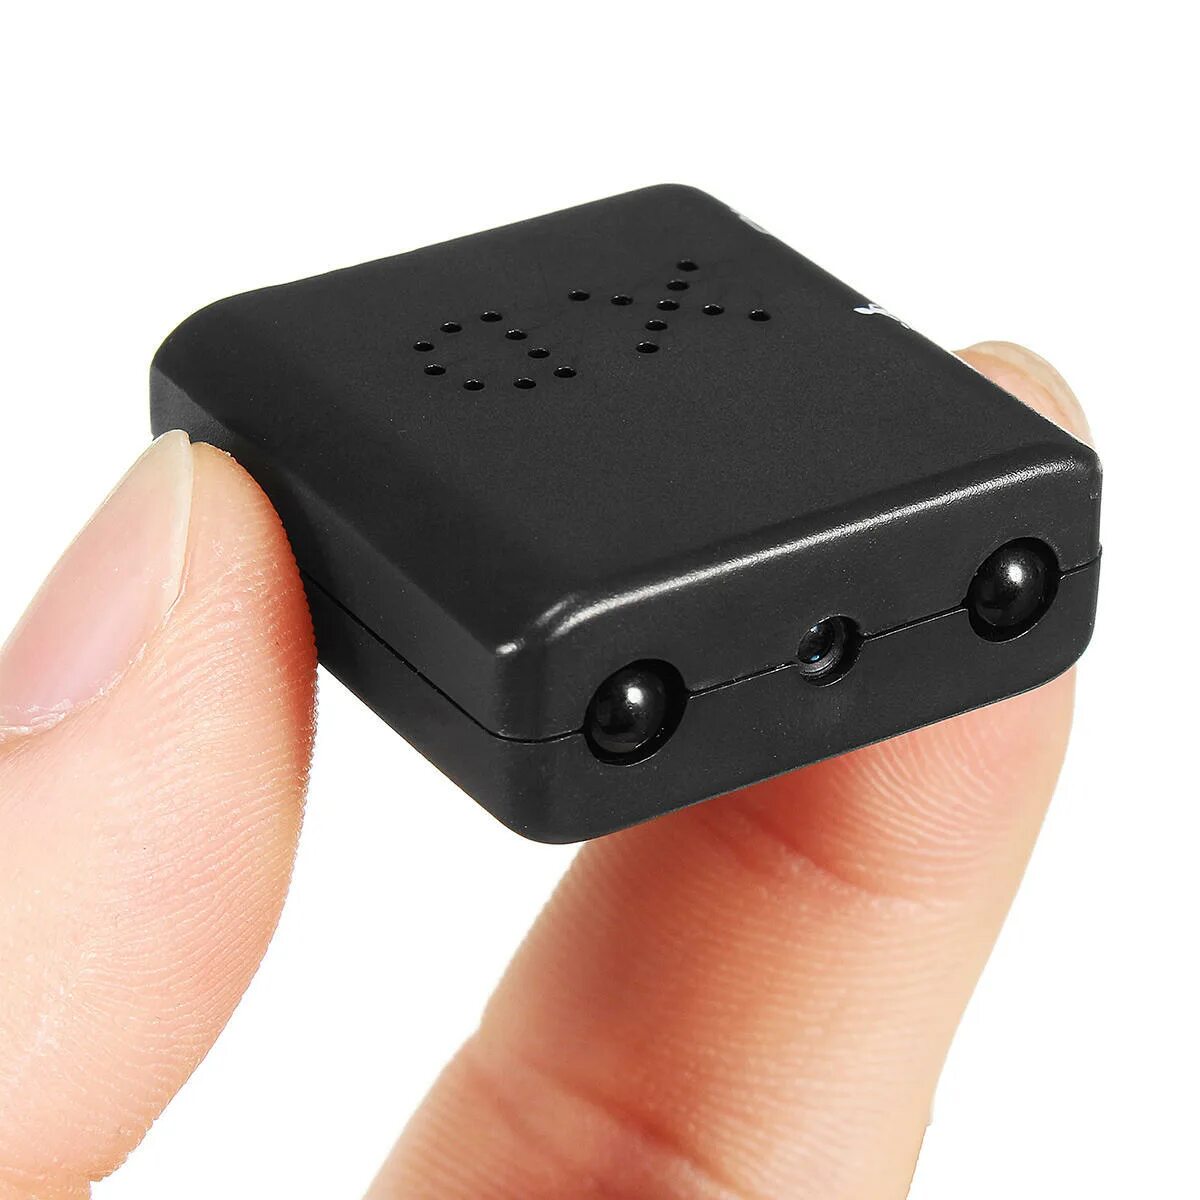 Микро видеонаблюдение. Юсб камера ночного видения маленькая. Микрокамера для скрытого видеонаблюдения WIFI.